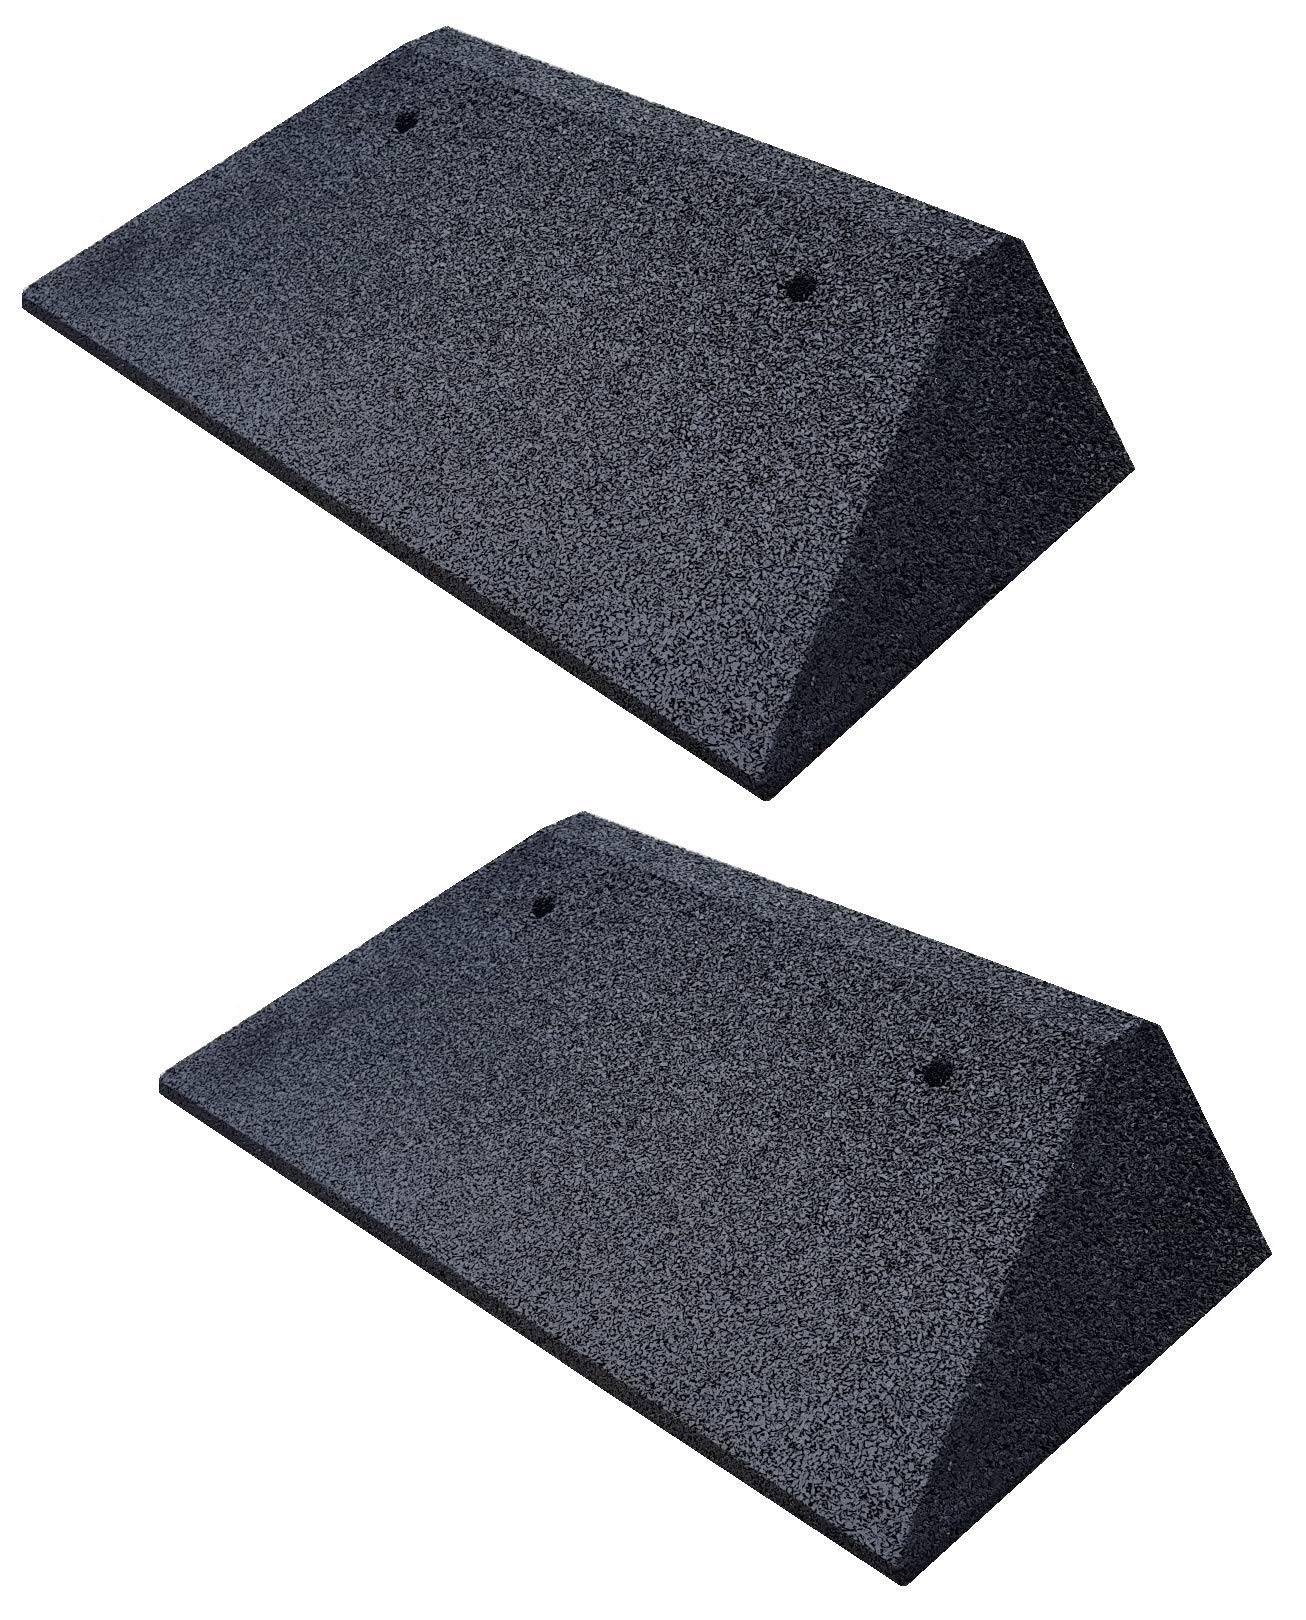 bepco Bordsteinkanten-Rampe-Set (2 Stück) mit beidseitigen Schrägen, LxBxH: 50 x 25 x 8 cm aus Gummi (schwarz) Auffahrrampe,Türschwellenrampe, mit eingelagerten Unterlegscheiben zur Befestigung